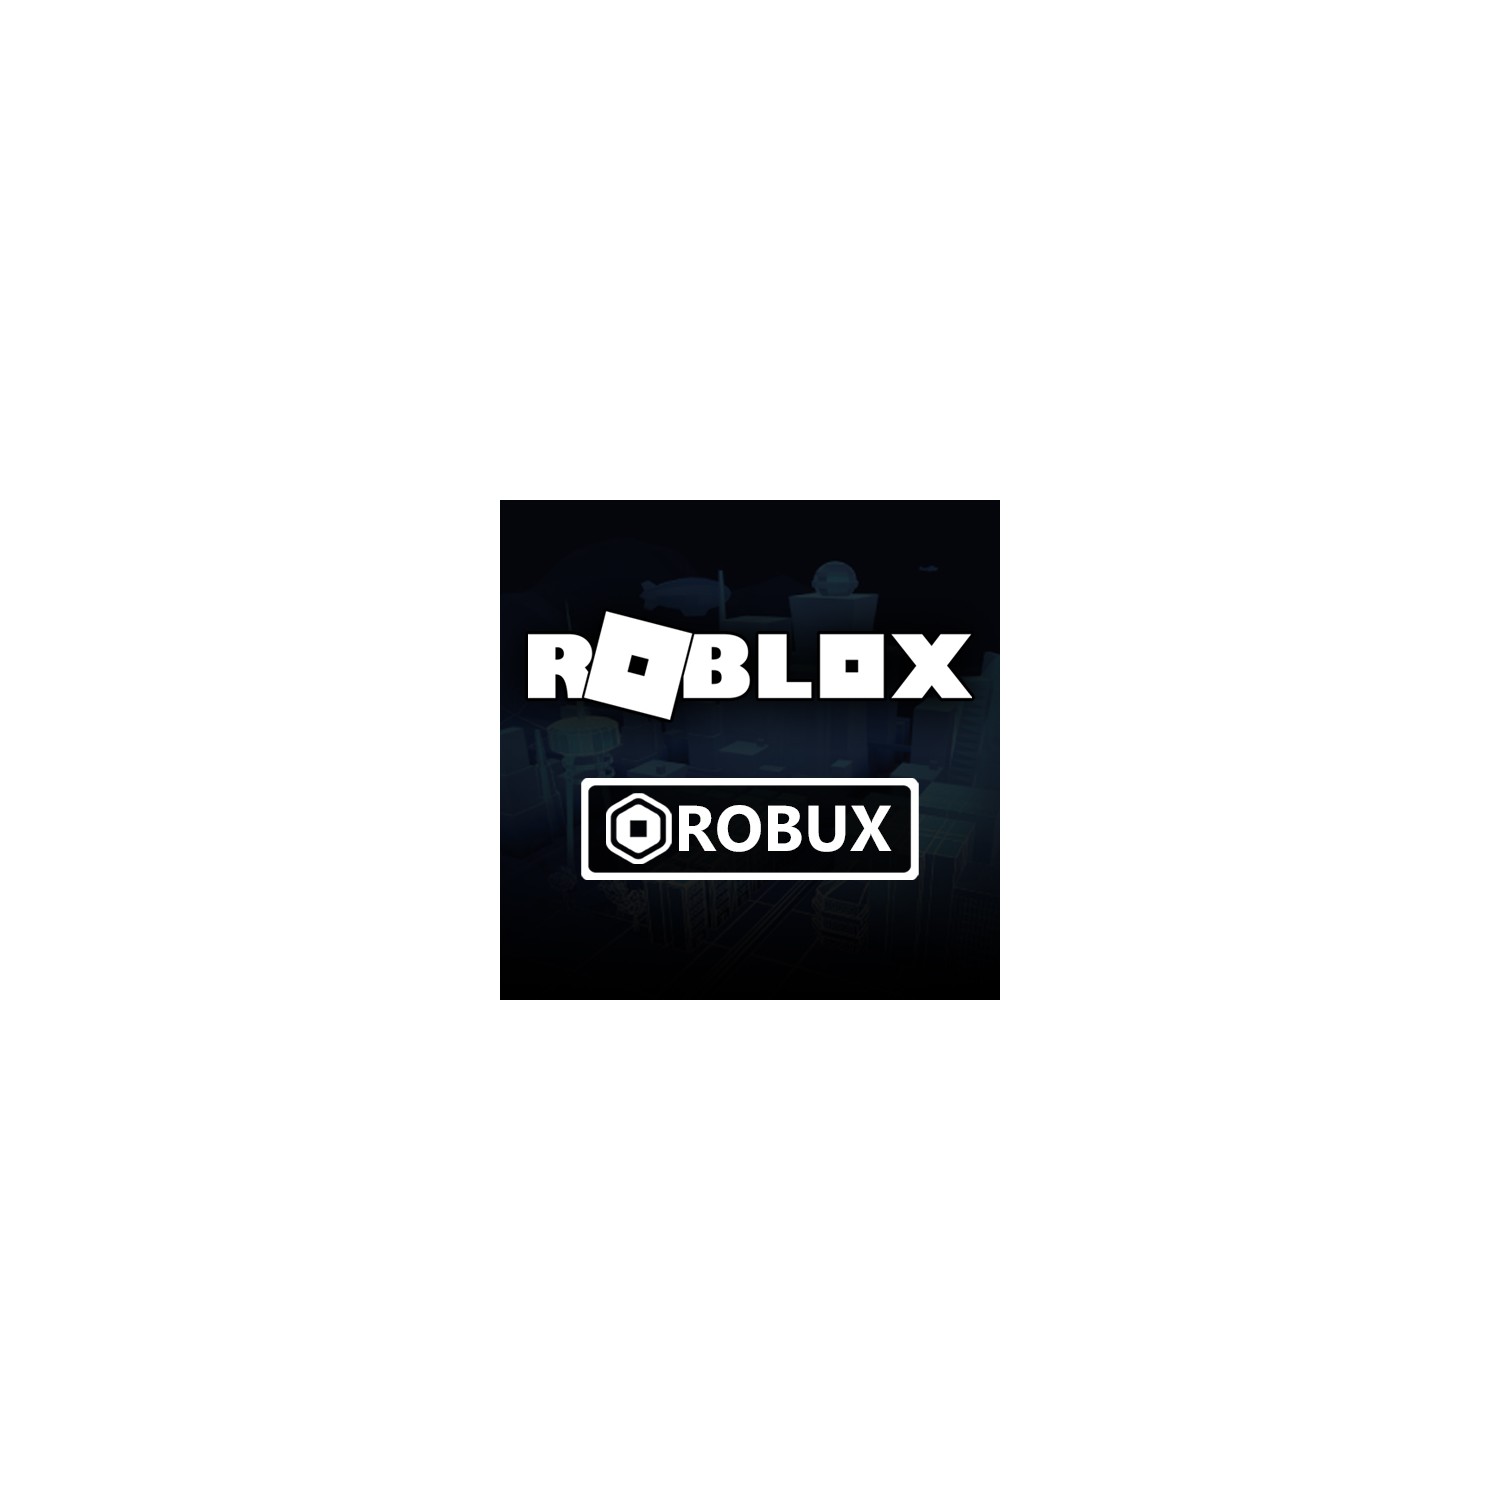 Roblox 800 Robux Fiyati Taksit Secenekleri Ile Satin Al - roblox 100 robux ne kadar türk lirası